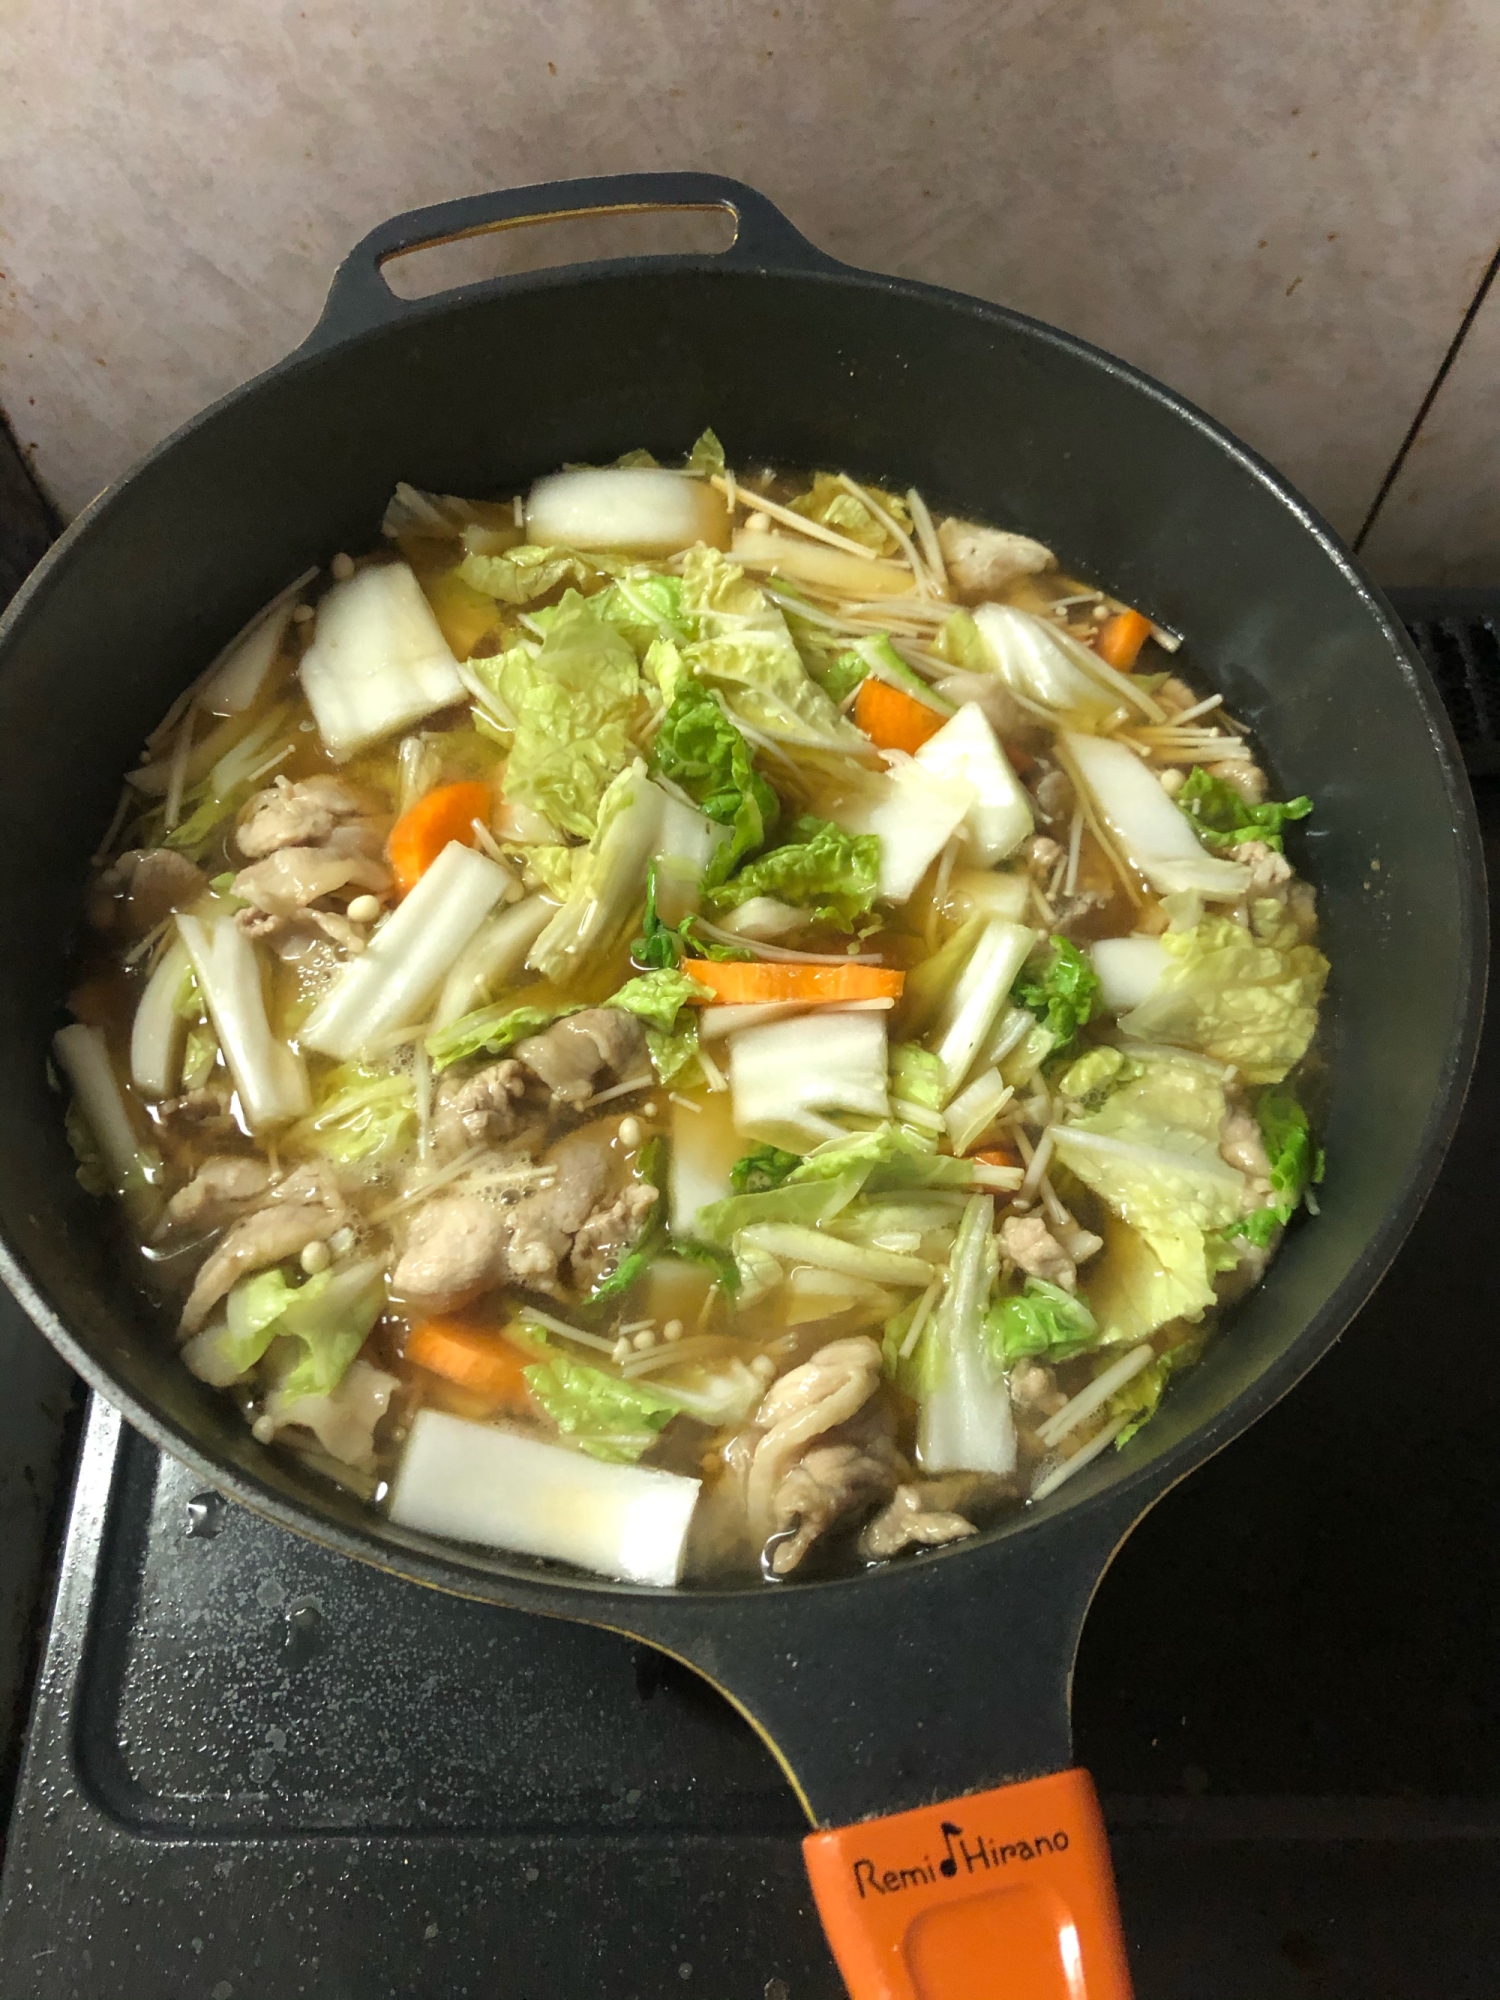 豚肉と白菜の中華風煮込み